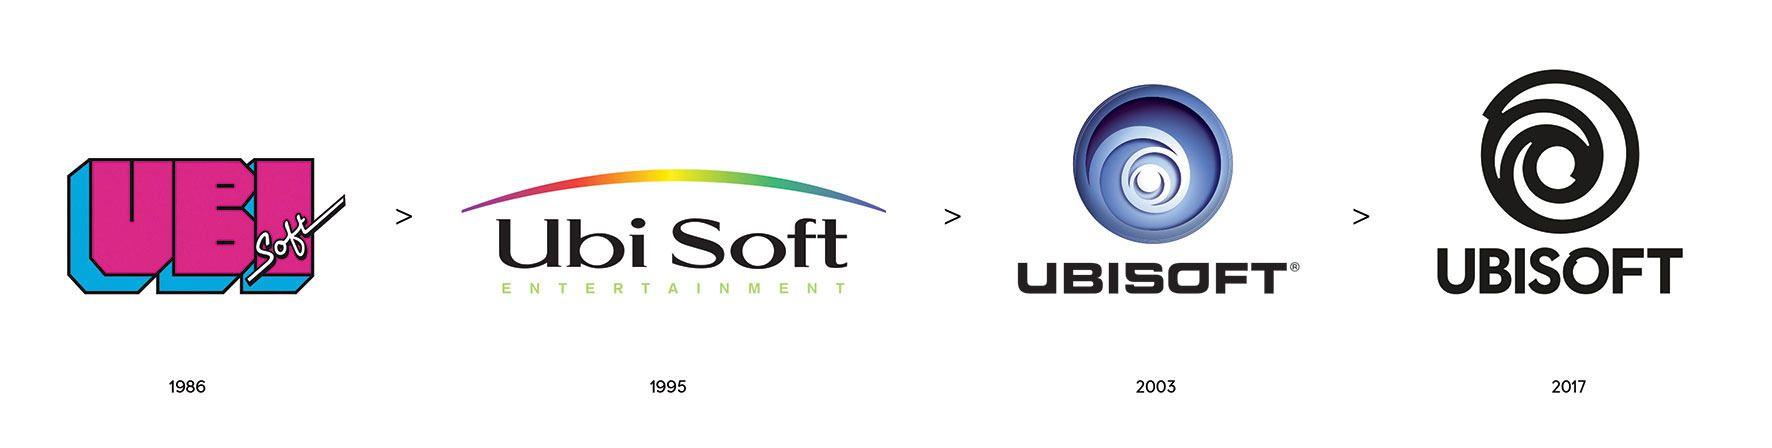 GameSpot Old Logo - Ubisoft Has A New Logo - GameSpot